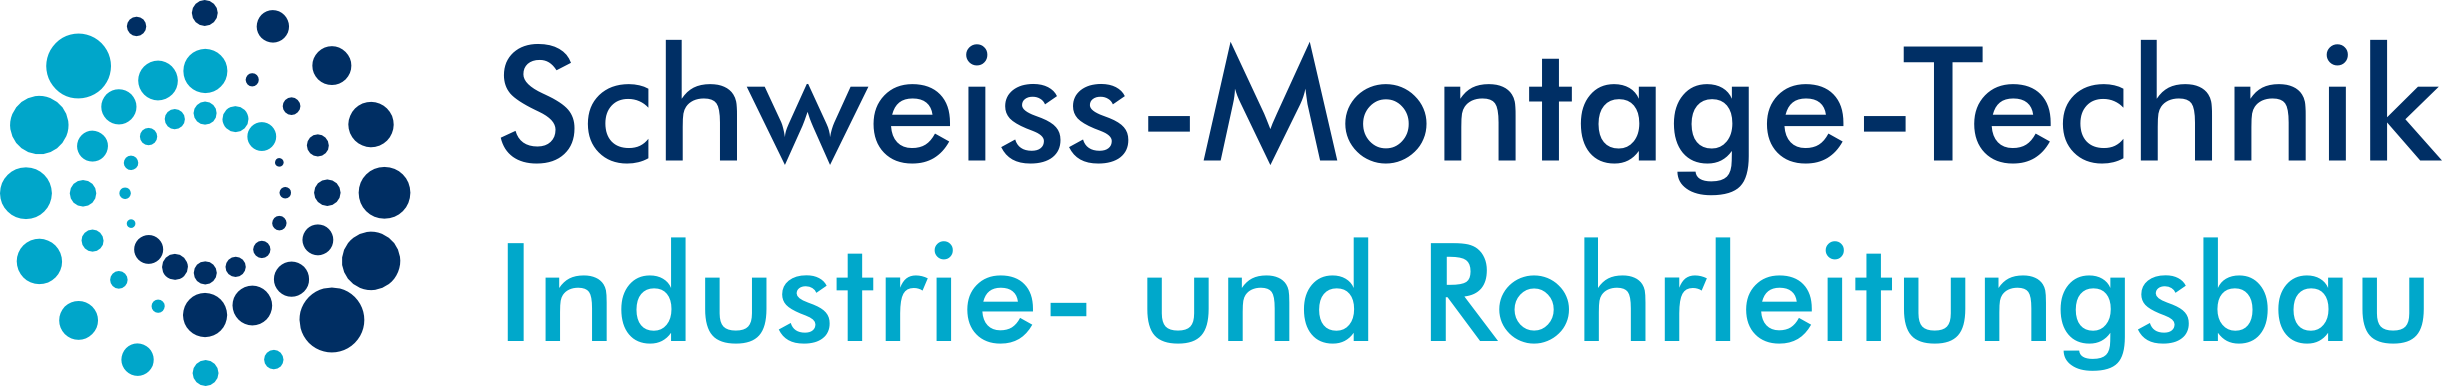 Logo Schweiss-Montage-Technik